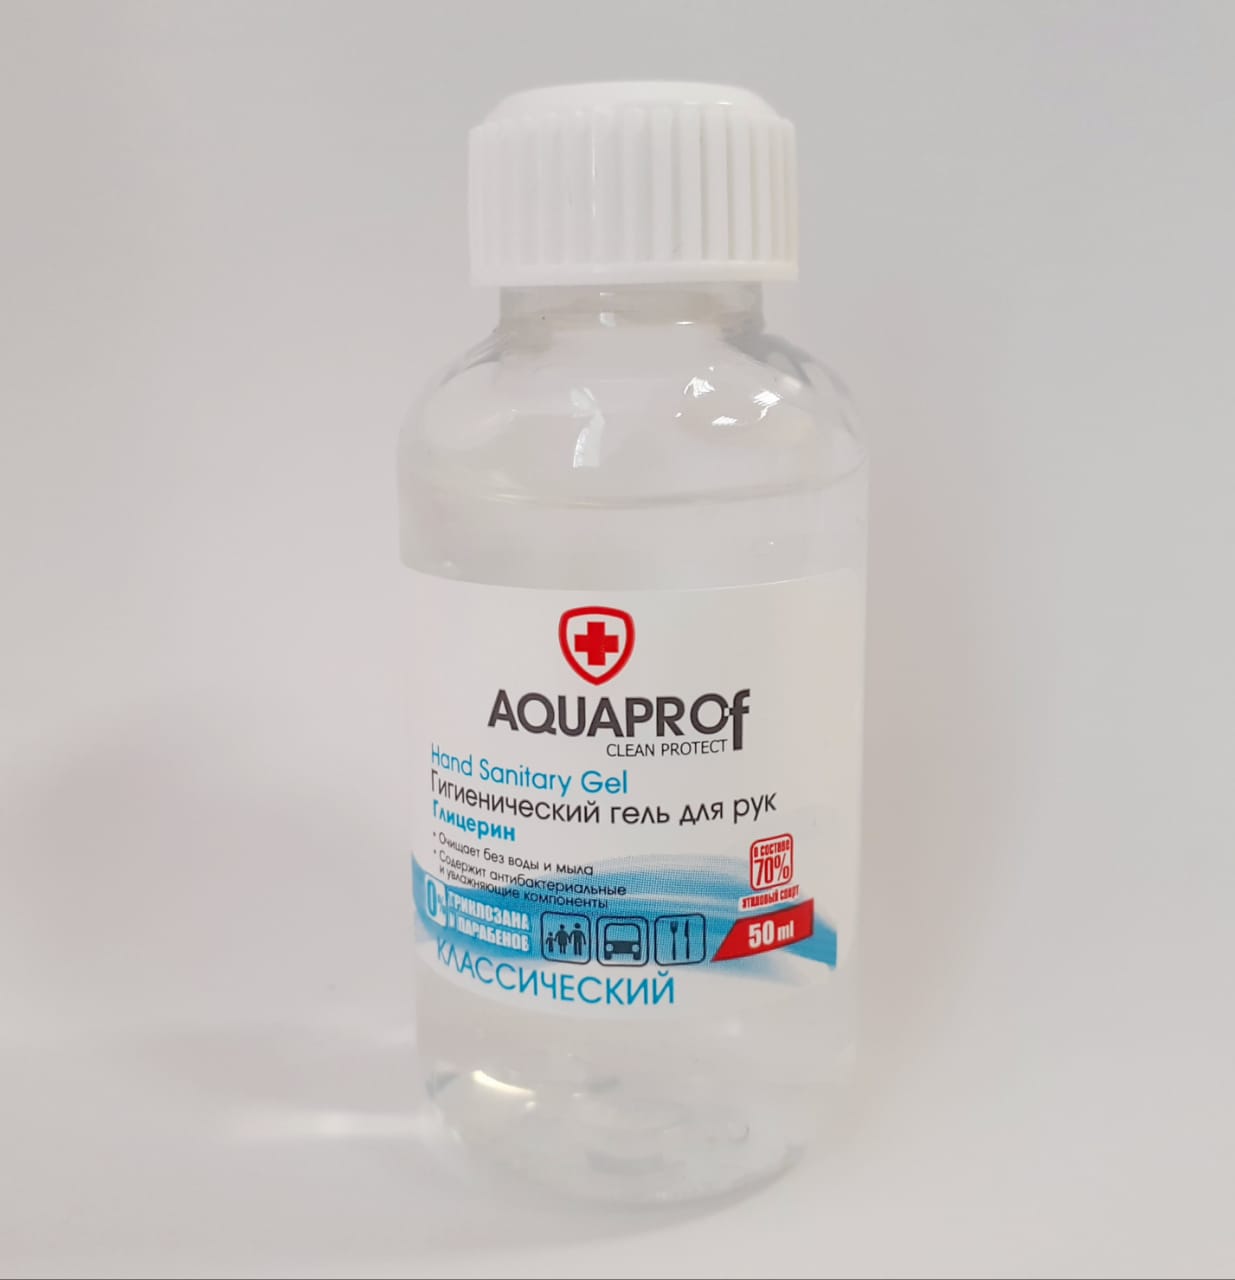 AQUAPROF Гель для дезинфекции рук на основе этилового спирта (70%) 50 мл